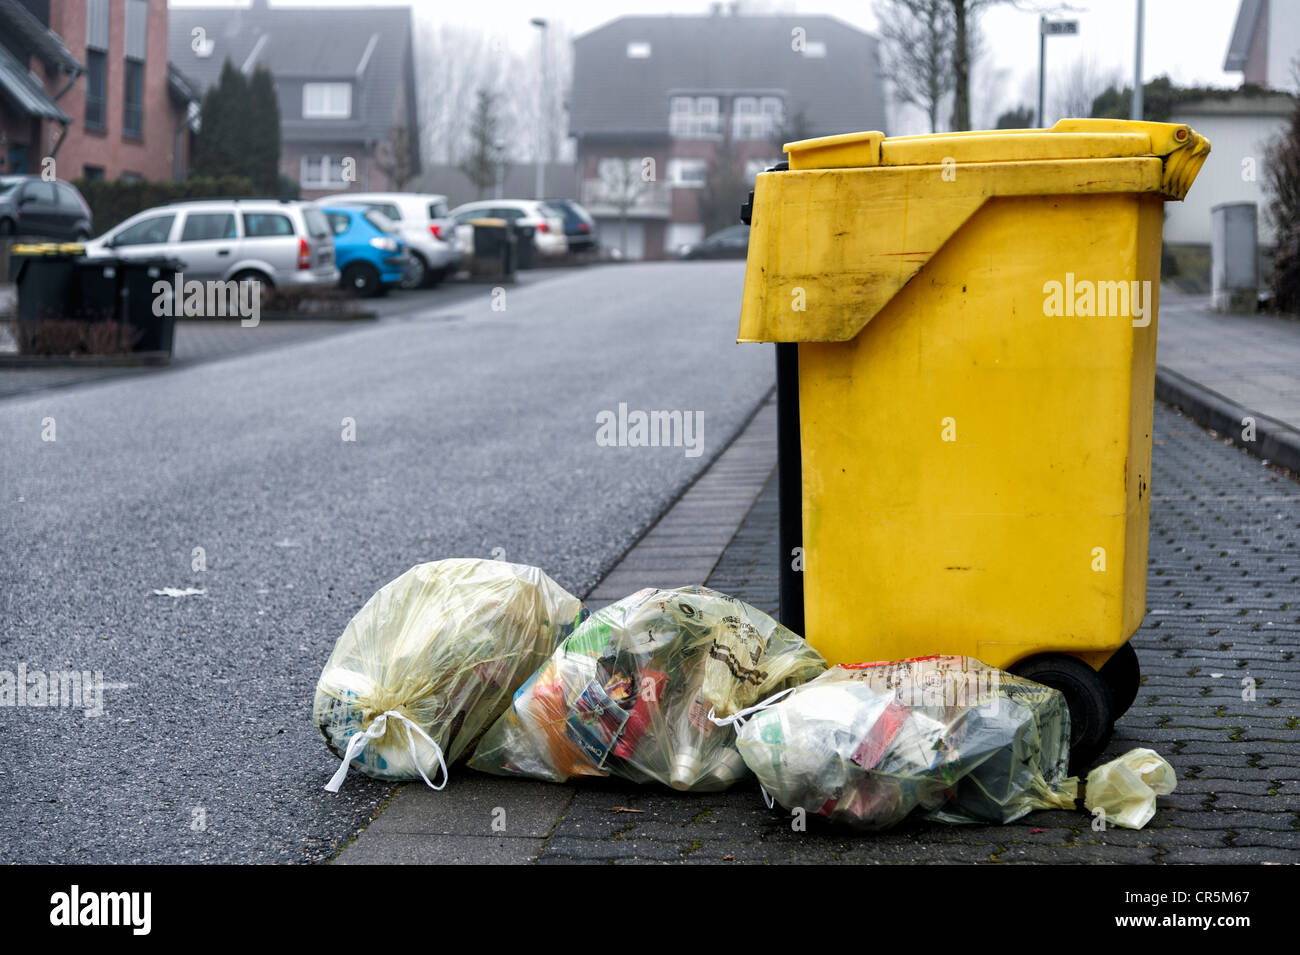 Bac de recyclage jaune et jaune des sacs de recyclage sur une rue, élimination des déchets, Grevenbroich, Rhénanie du Nord-Westphalie Banque D'Images